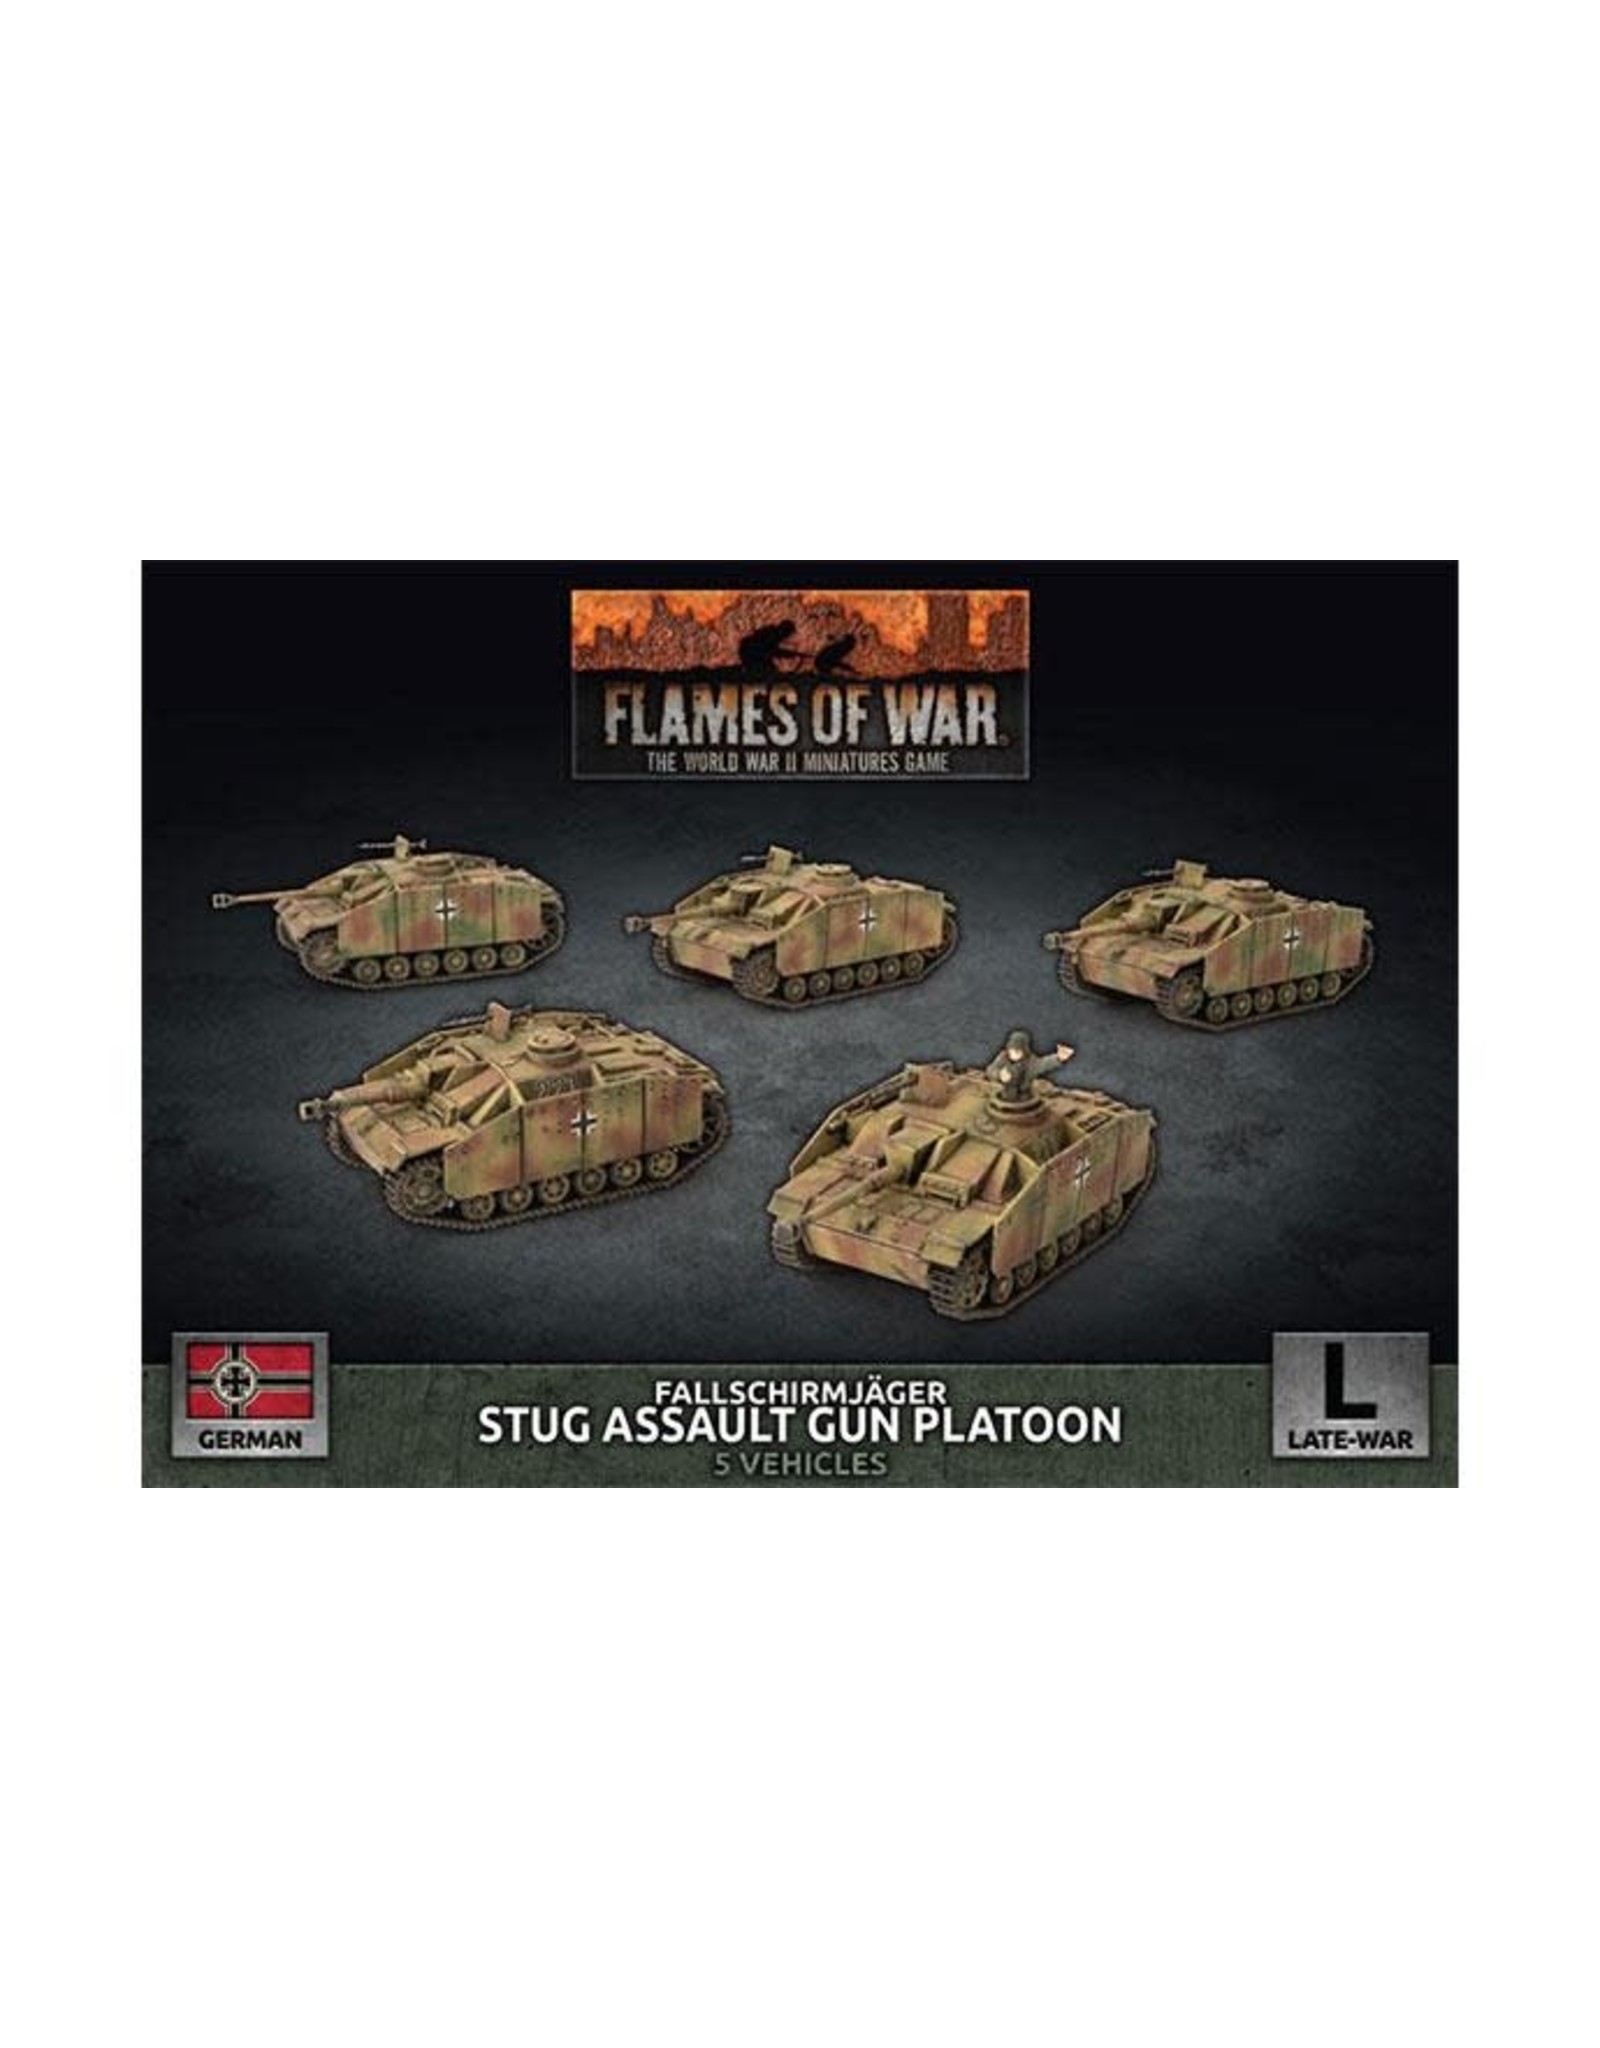 Battlefront Miniatures Flames of War Fallschirmjäger StuG Assault Gun Platoon